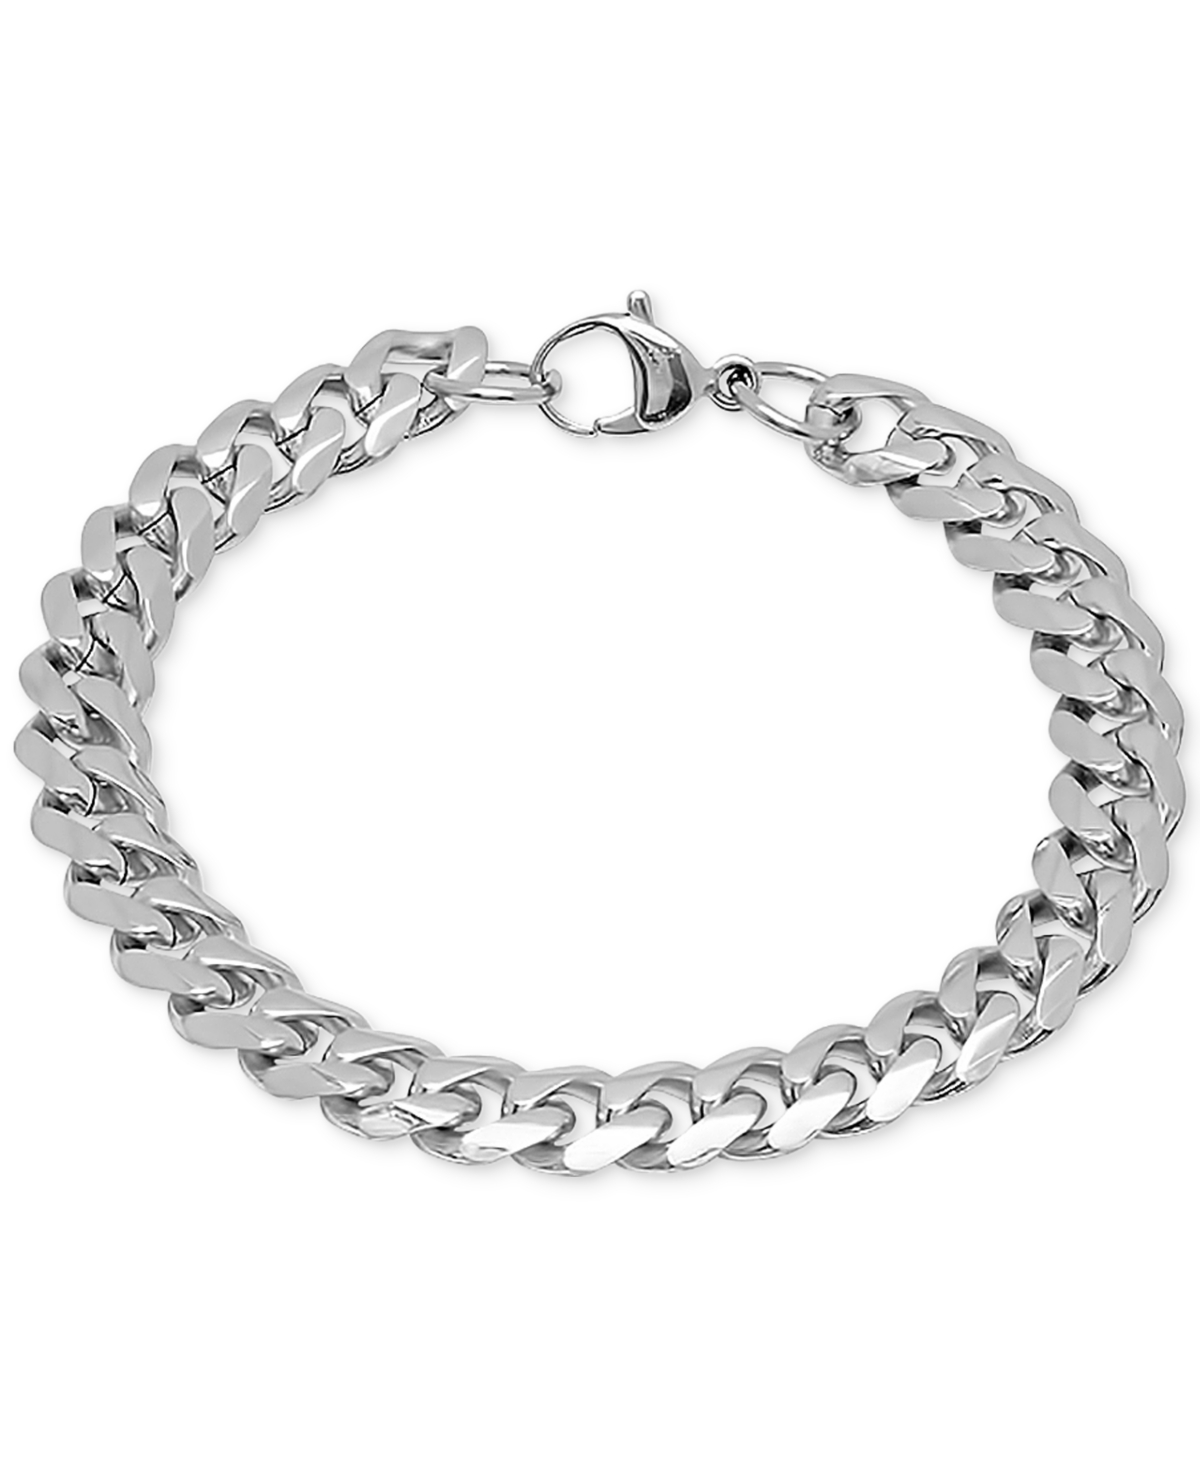 Men's Silver-Tone Chain Link Necklace & Bracelet Set - Silver